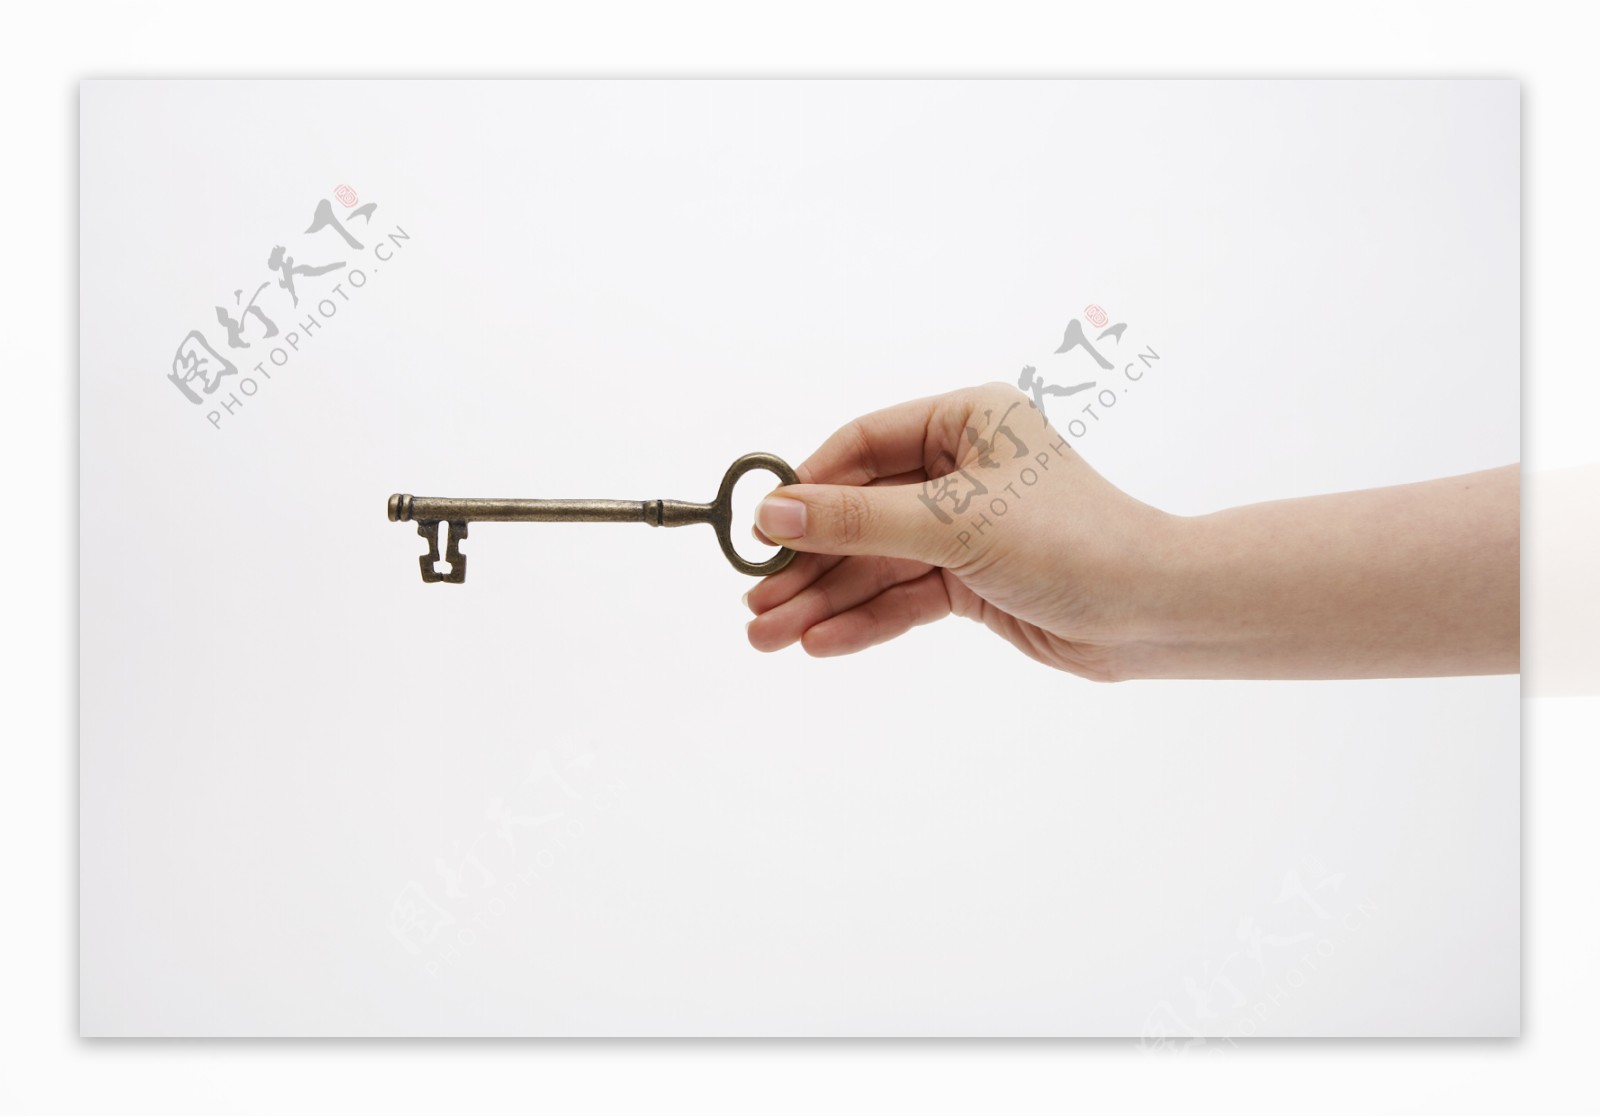 钥匙金钥匙图片